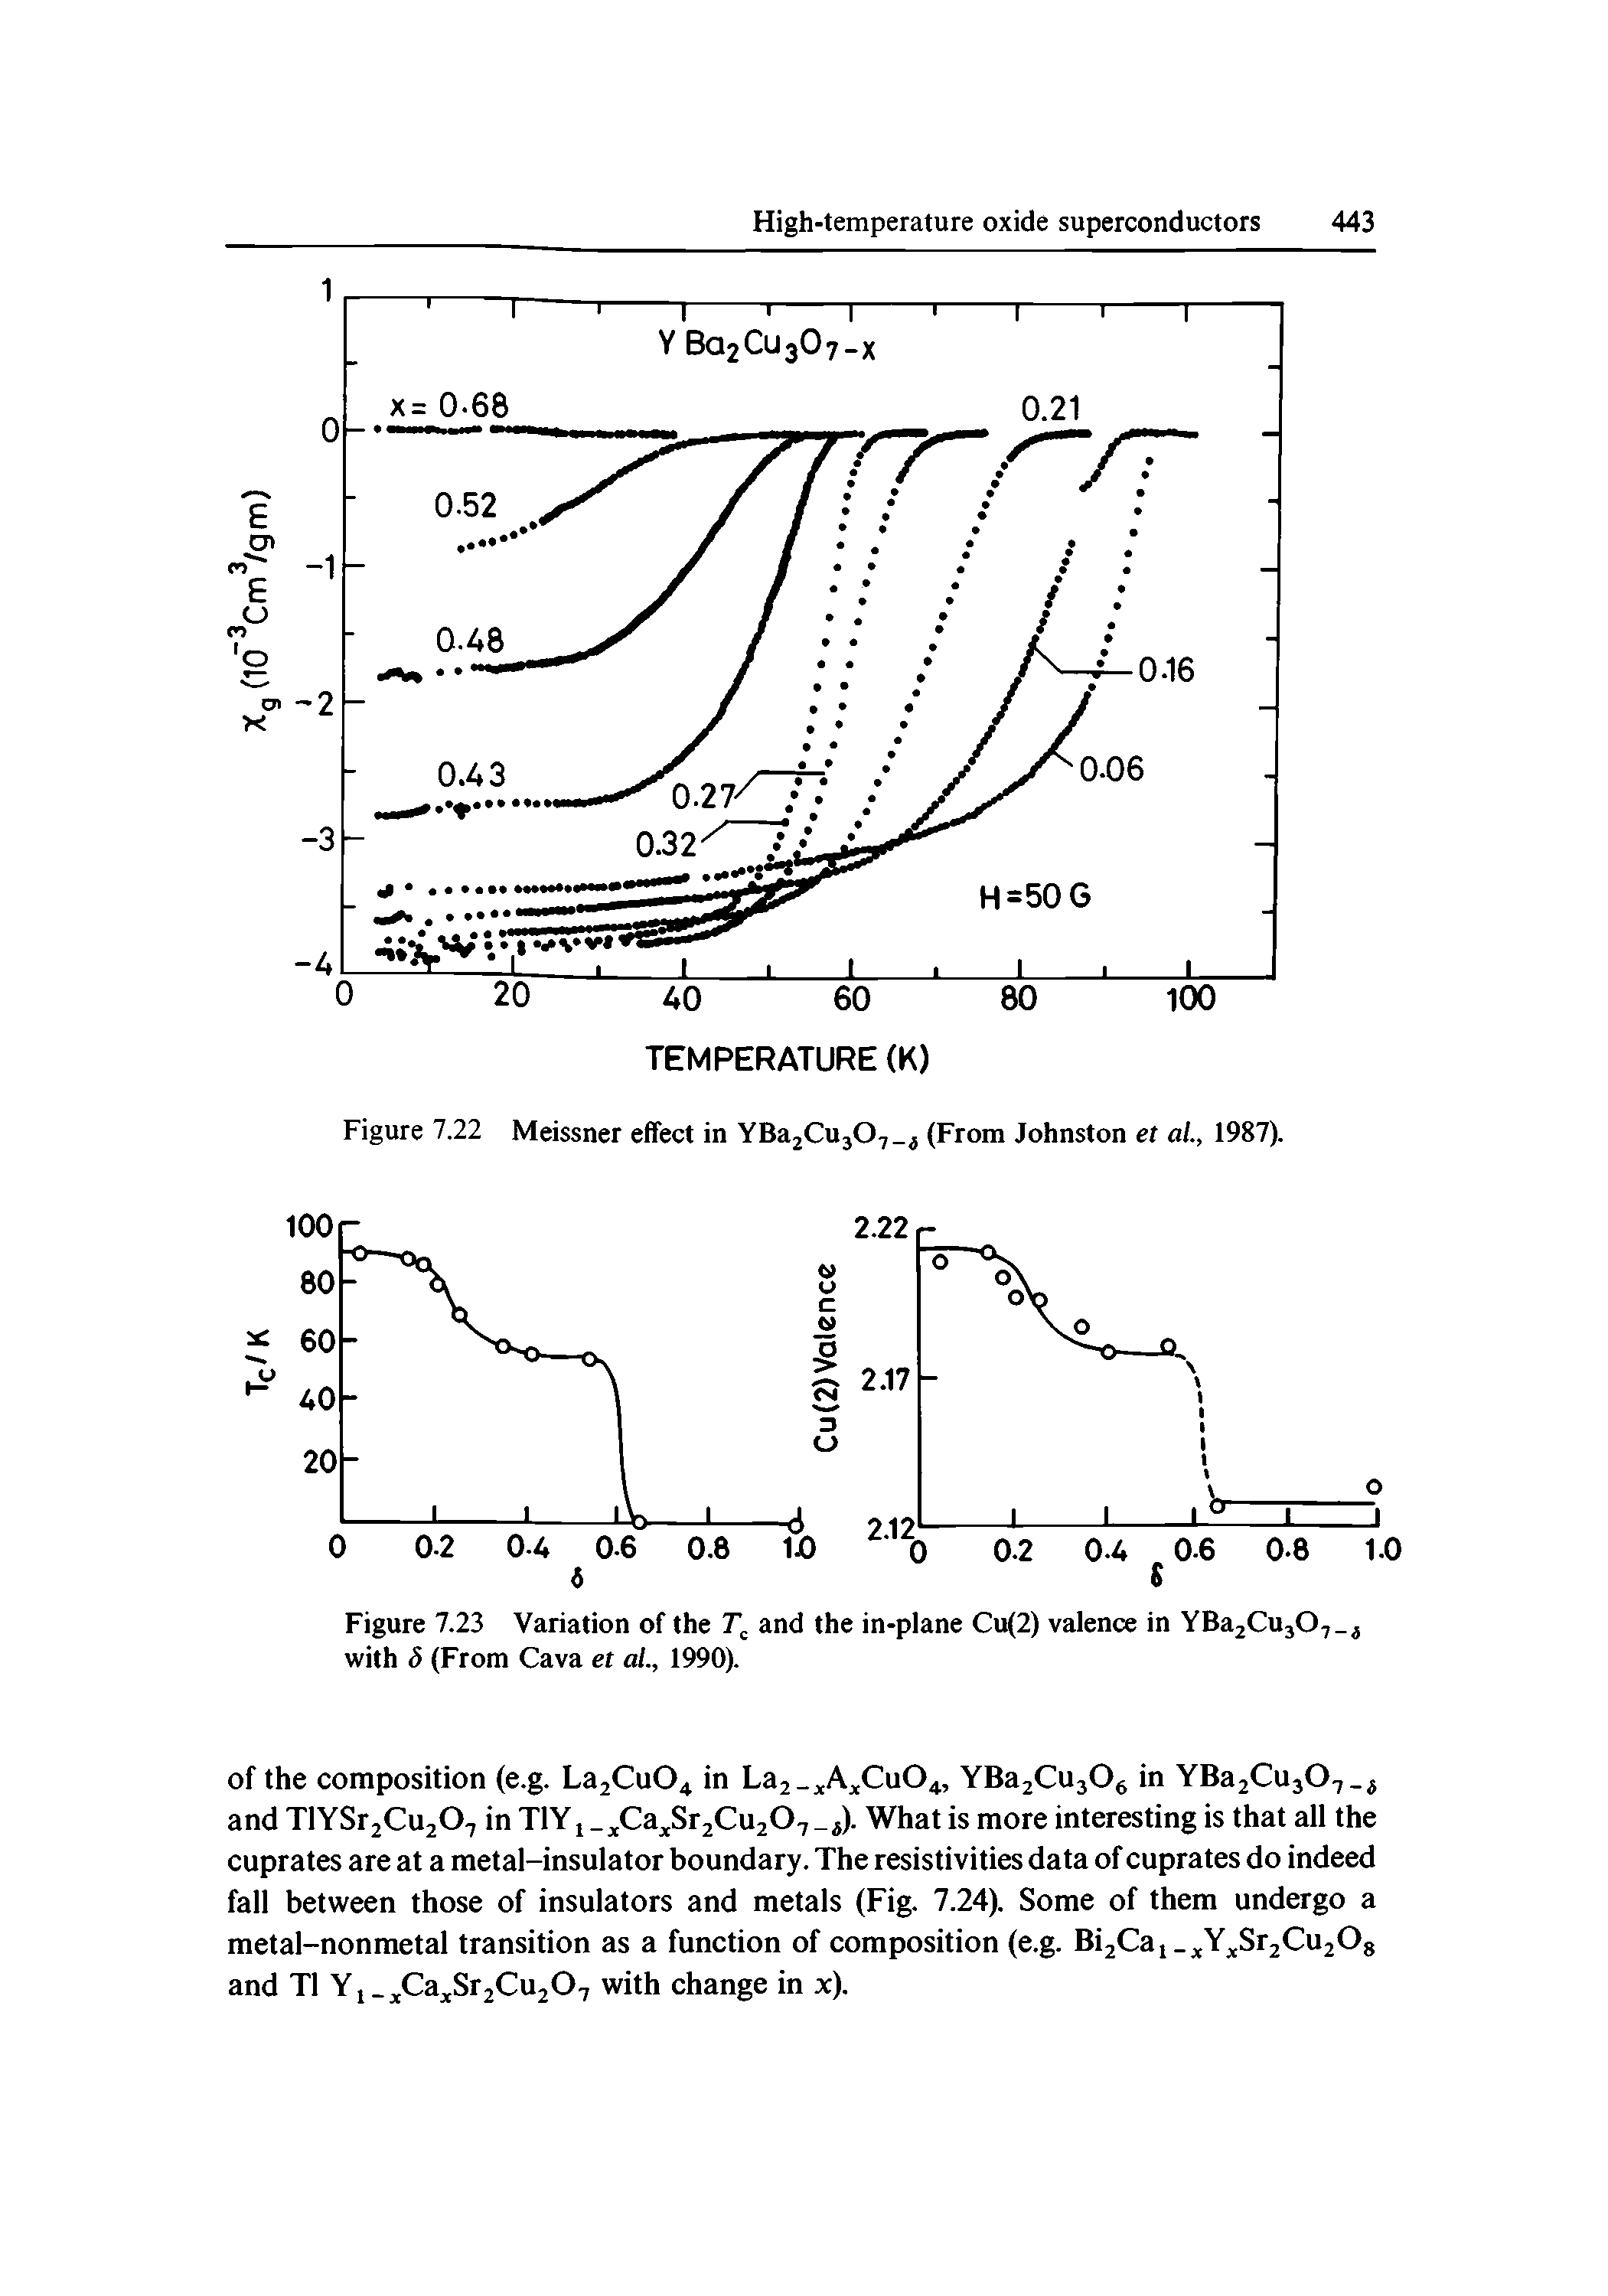 Figure 7.22 Meissner effect in YBa2Cuj07 (From Johnston et a/., 1987).